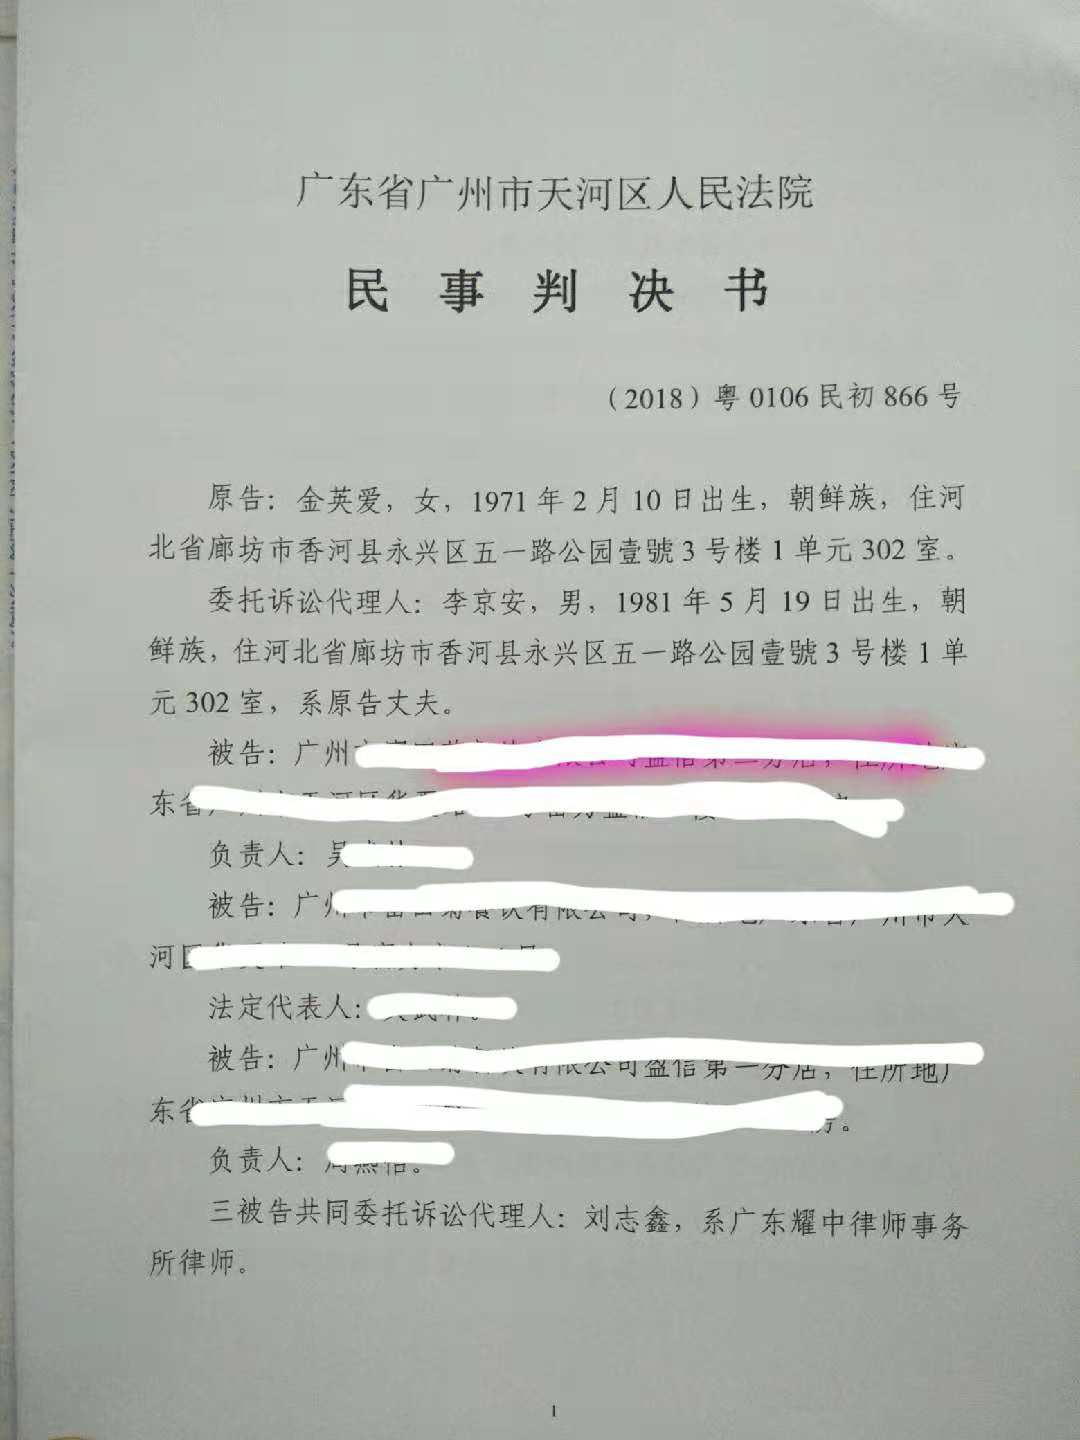 食品律师刘志鑫成功帮助广州某餐饮企业完胜职业打假人